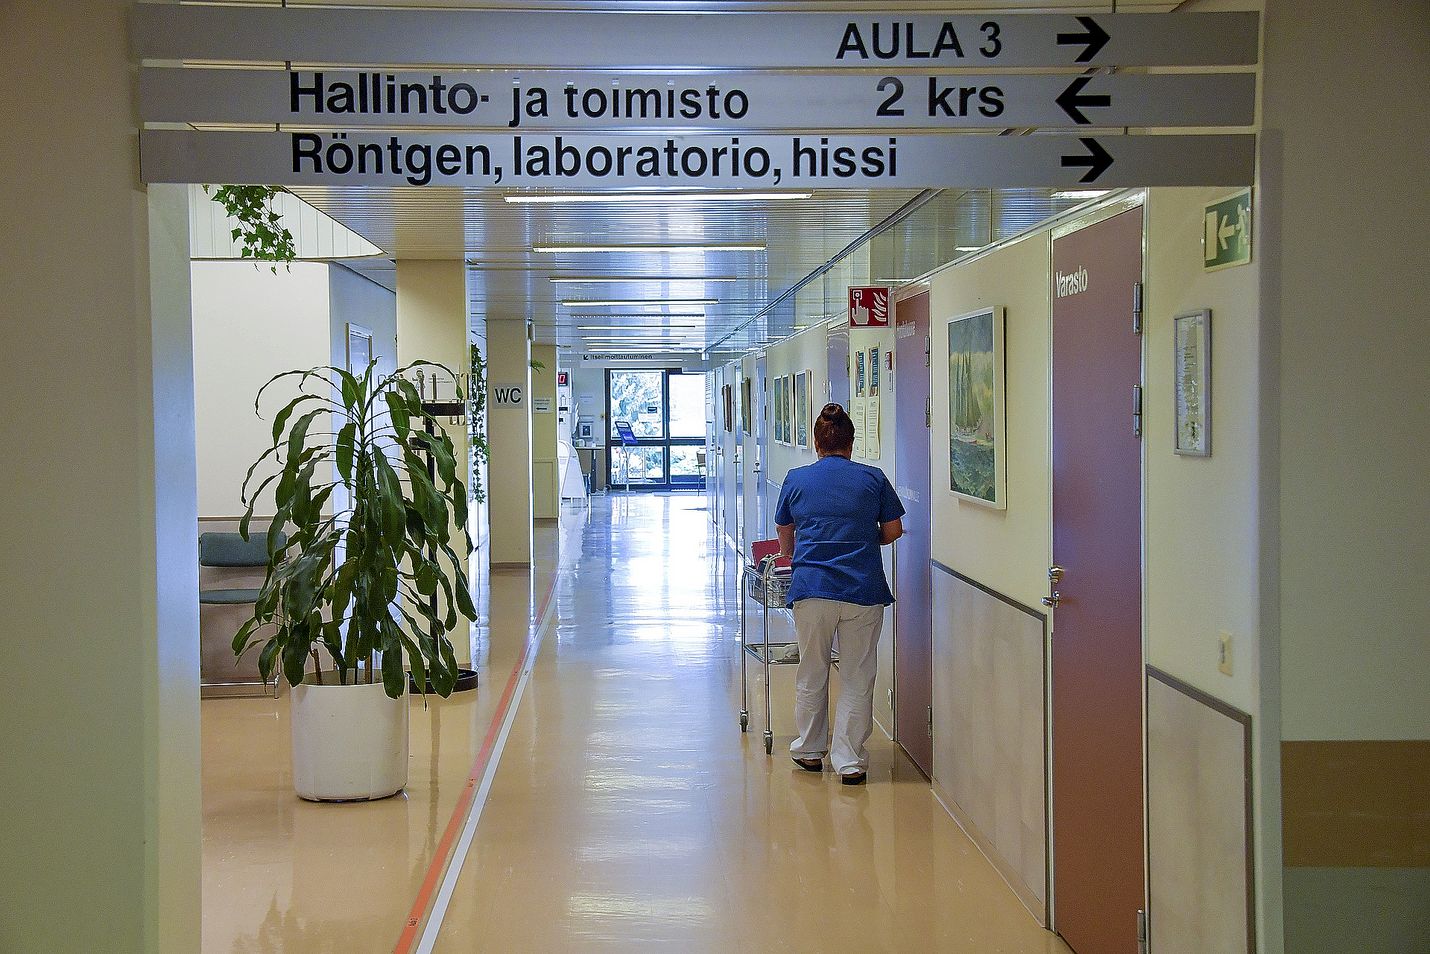 Pääsy terveyspalveluihin on suomalaisille kaikkein tärkein asia tuoreen tutkimuksen mukaan.